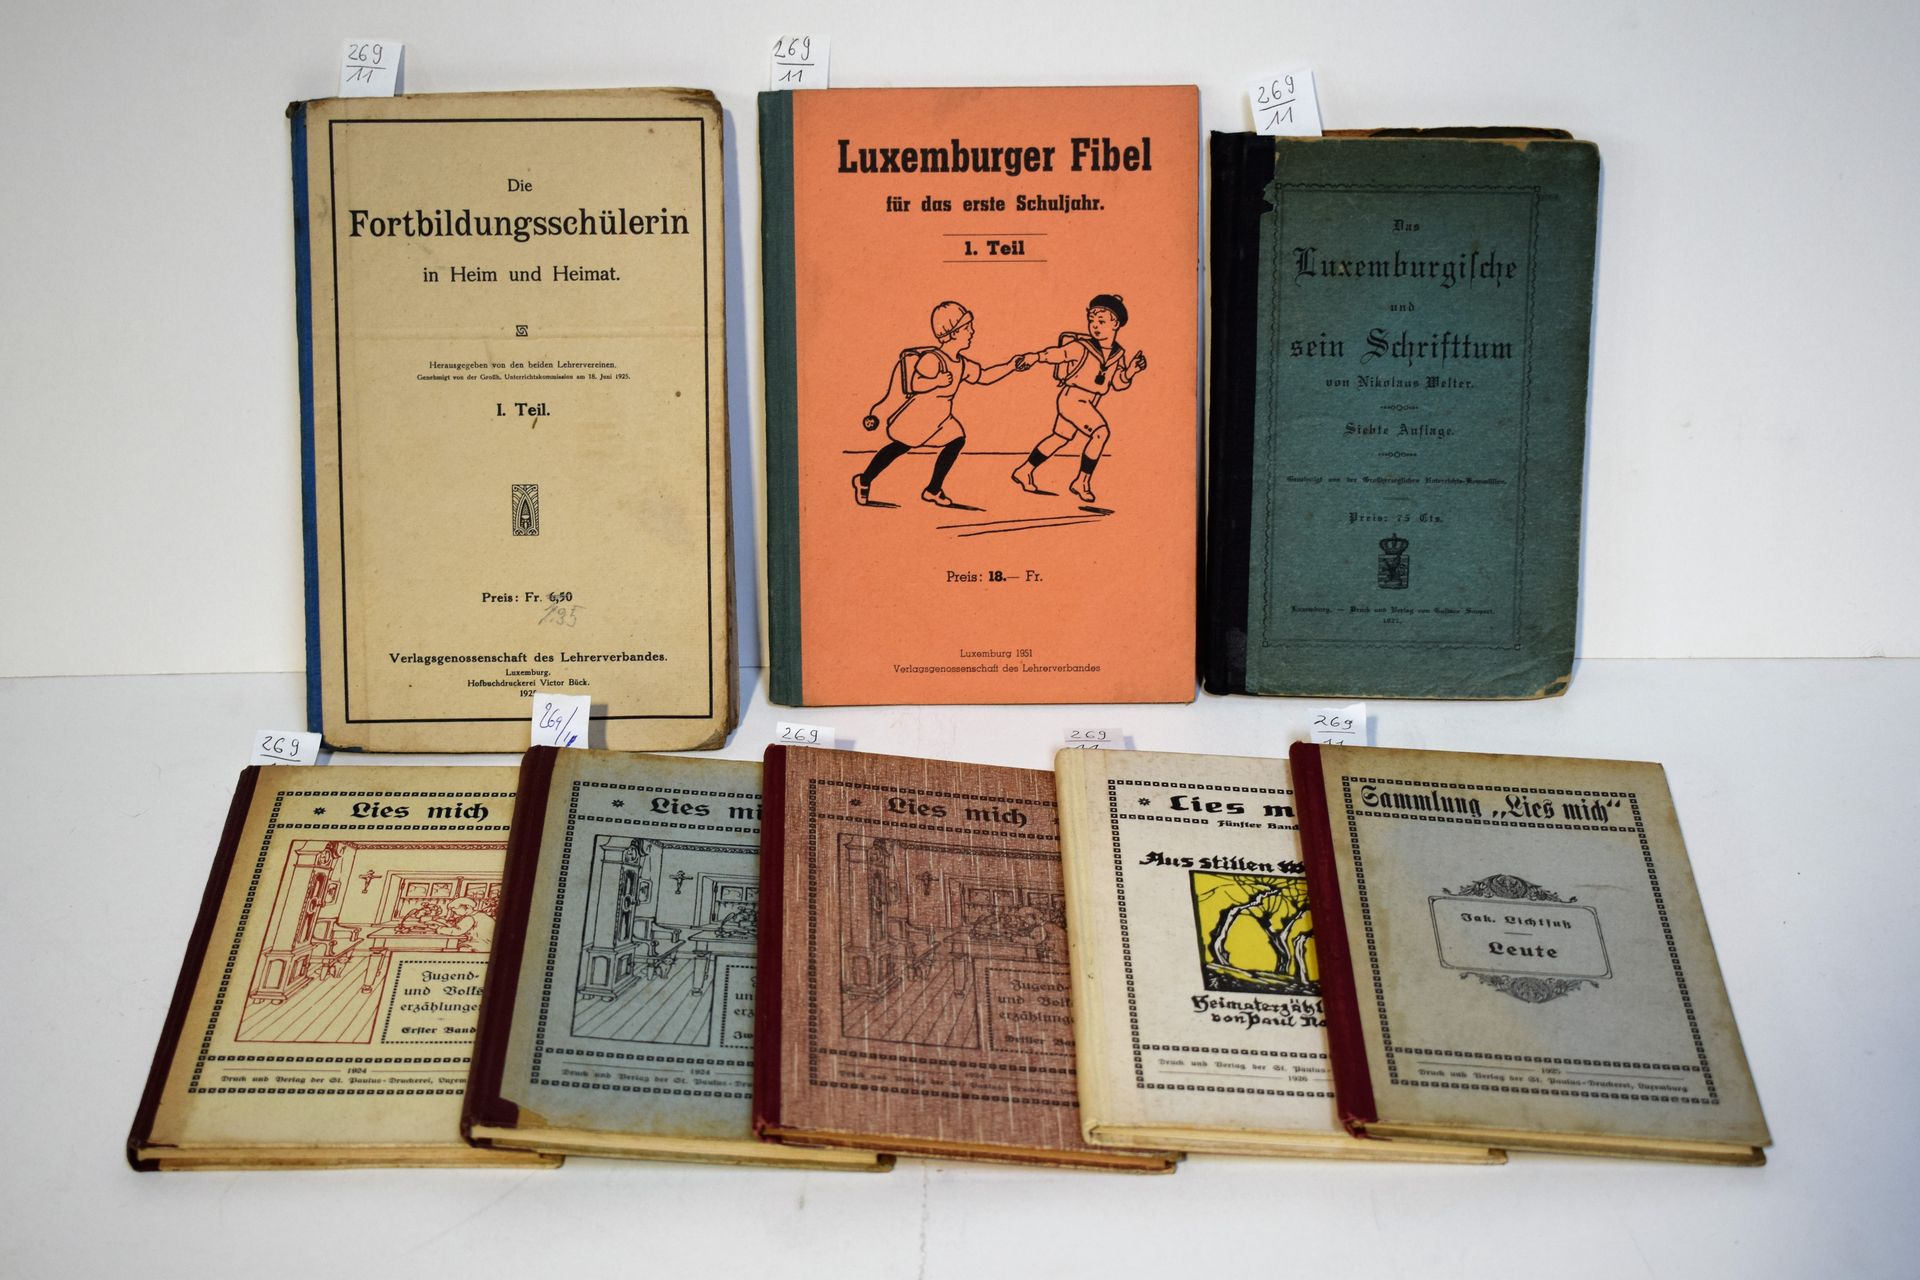 Null (学校) 1.2、《卢森堡人》，第二部分，1925年。 3、《尼古拉斯-韦尔特》，《卢森堡和他的慈善事业》，1921年。 4、《我的谎言》，《少年和青&hellip;